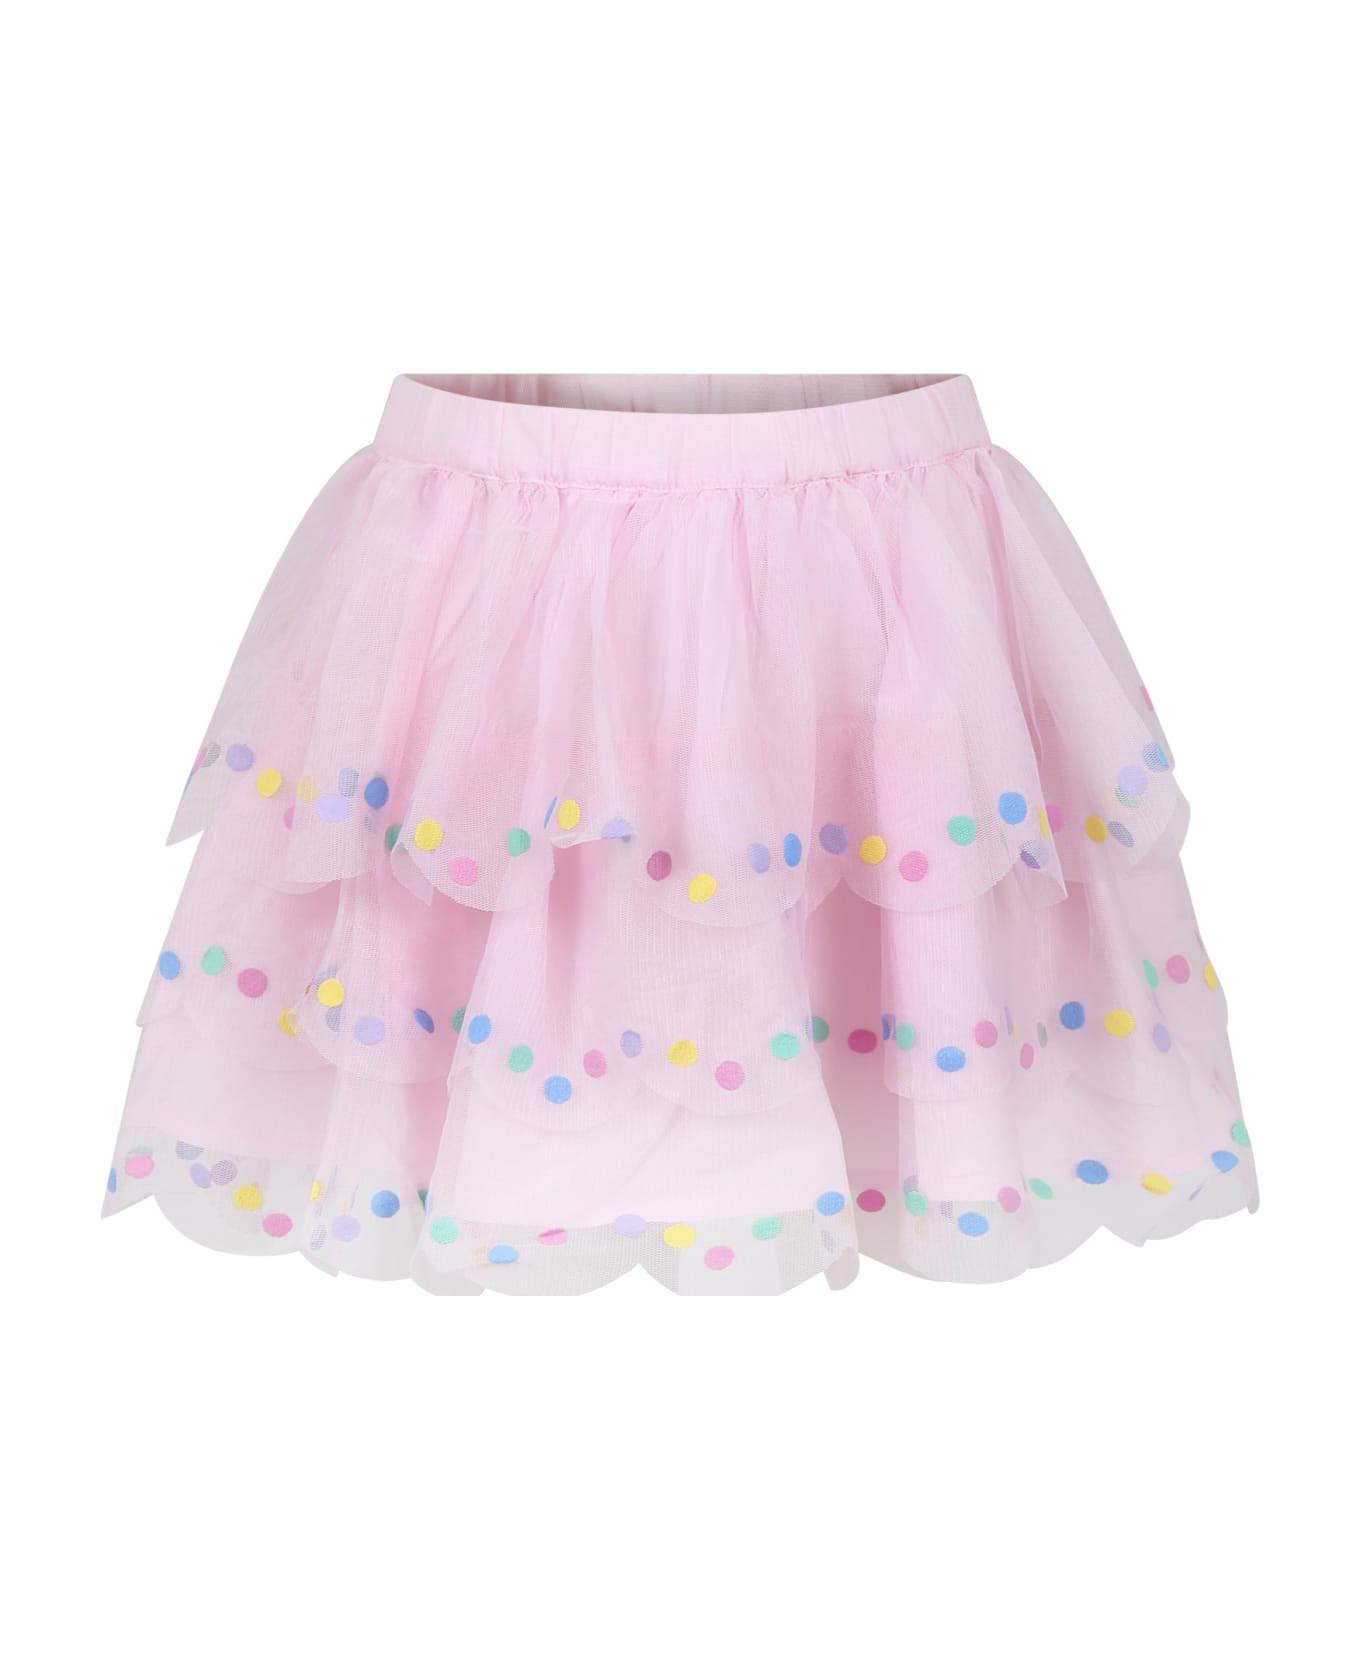 Stella McCartney Kids Pink Tulle Skirt For Girl - wisteria